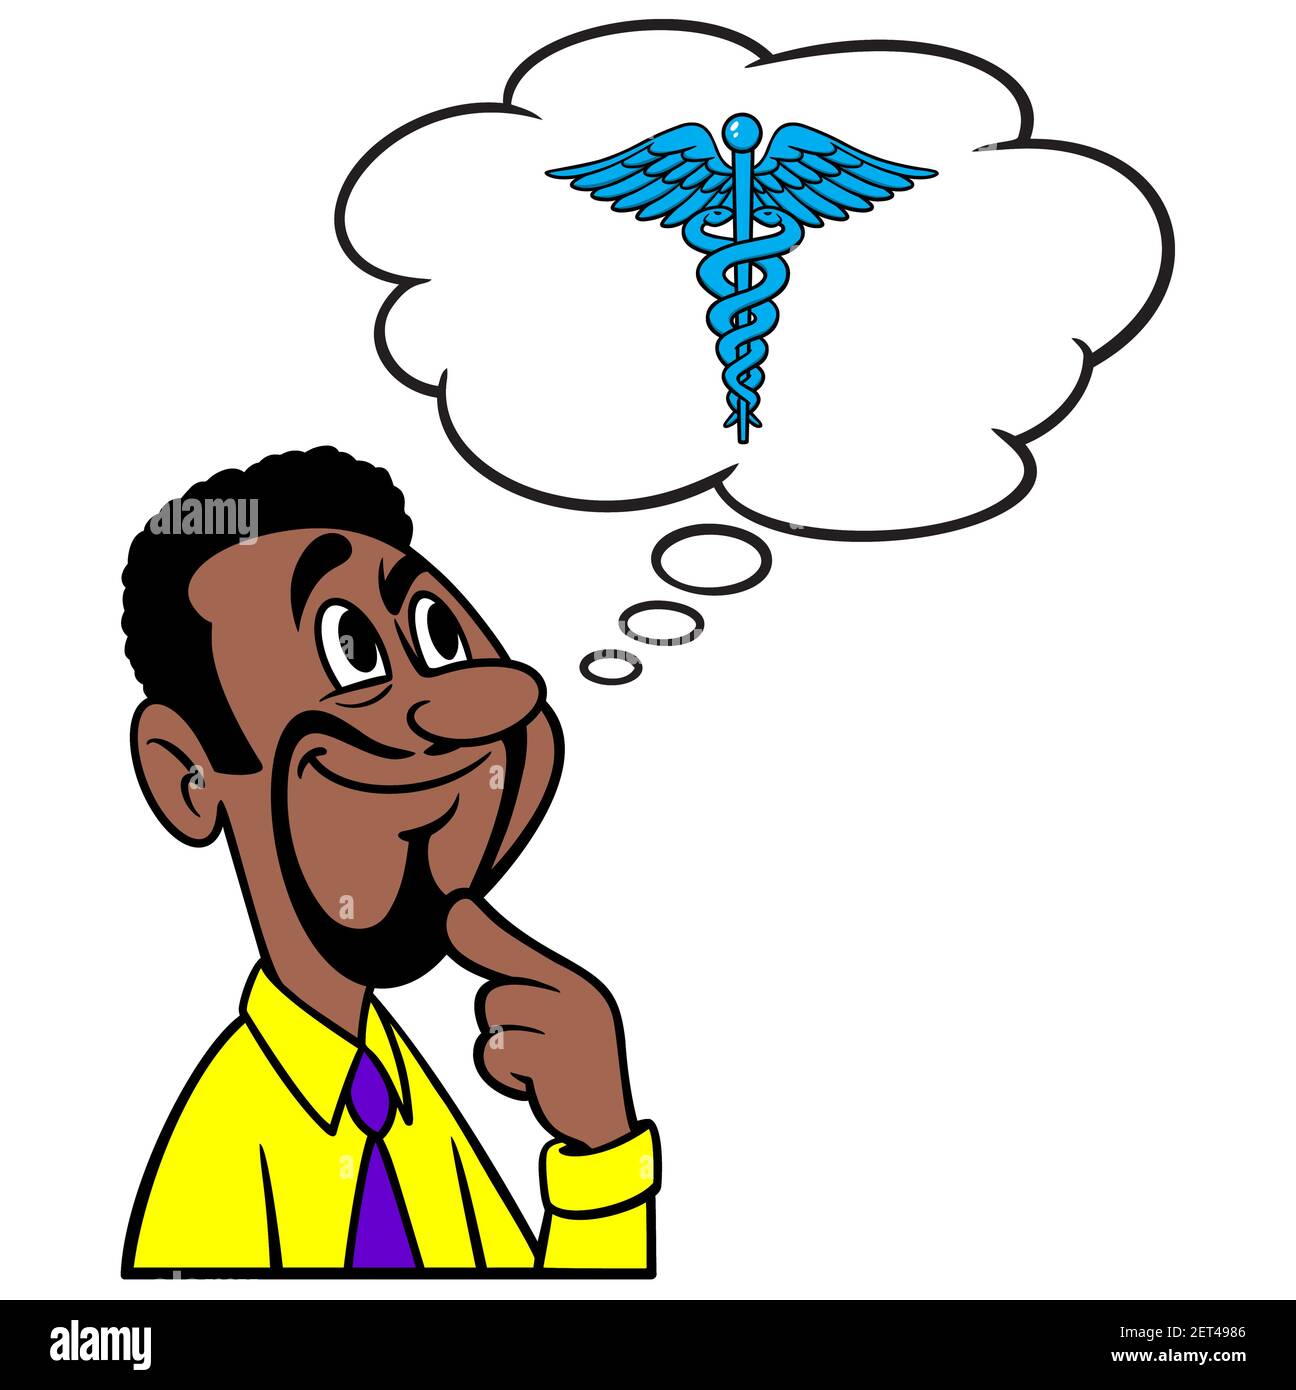 Hombre pensando en el Seguro de Salud - una ilustración de dibujos animados  de un hombre pensando en obtener el Seguro de Salud Imagen Vector de stock  - Alamy